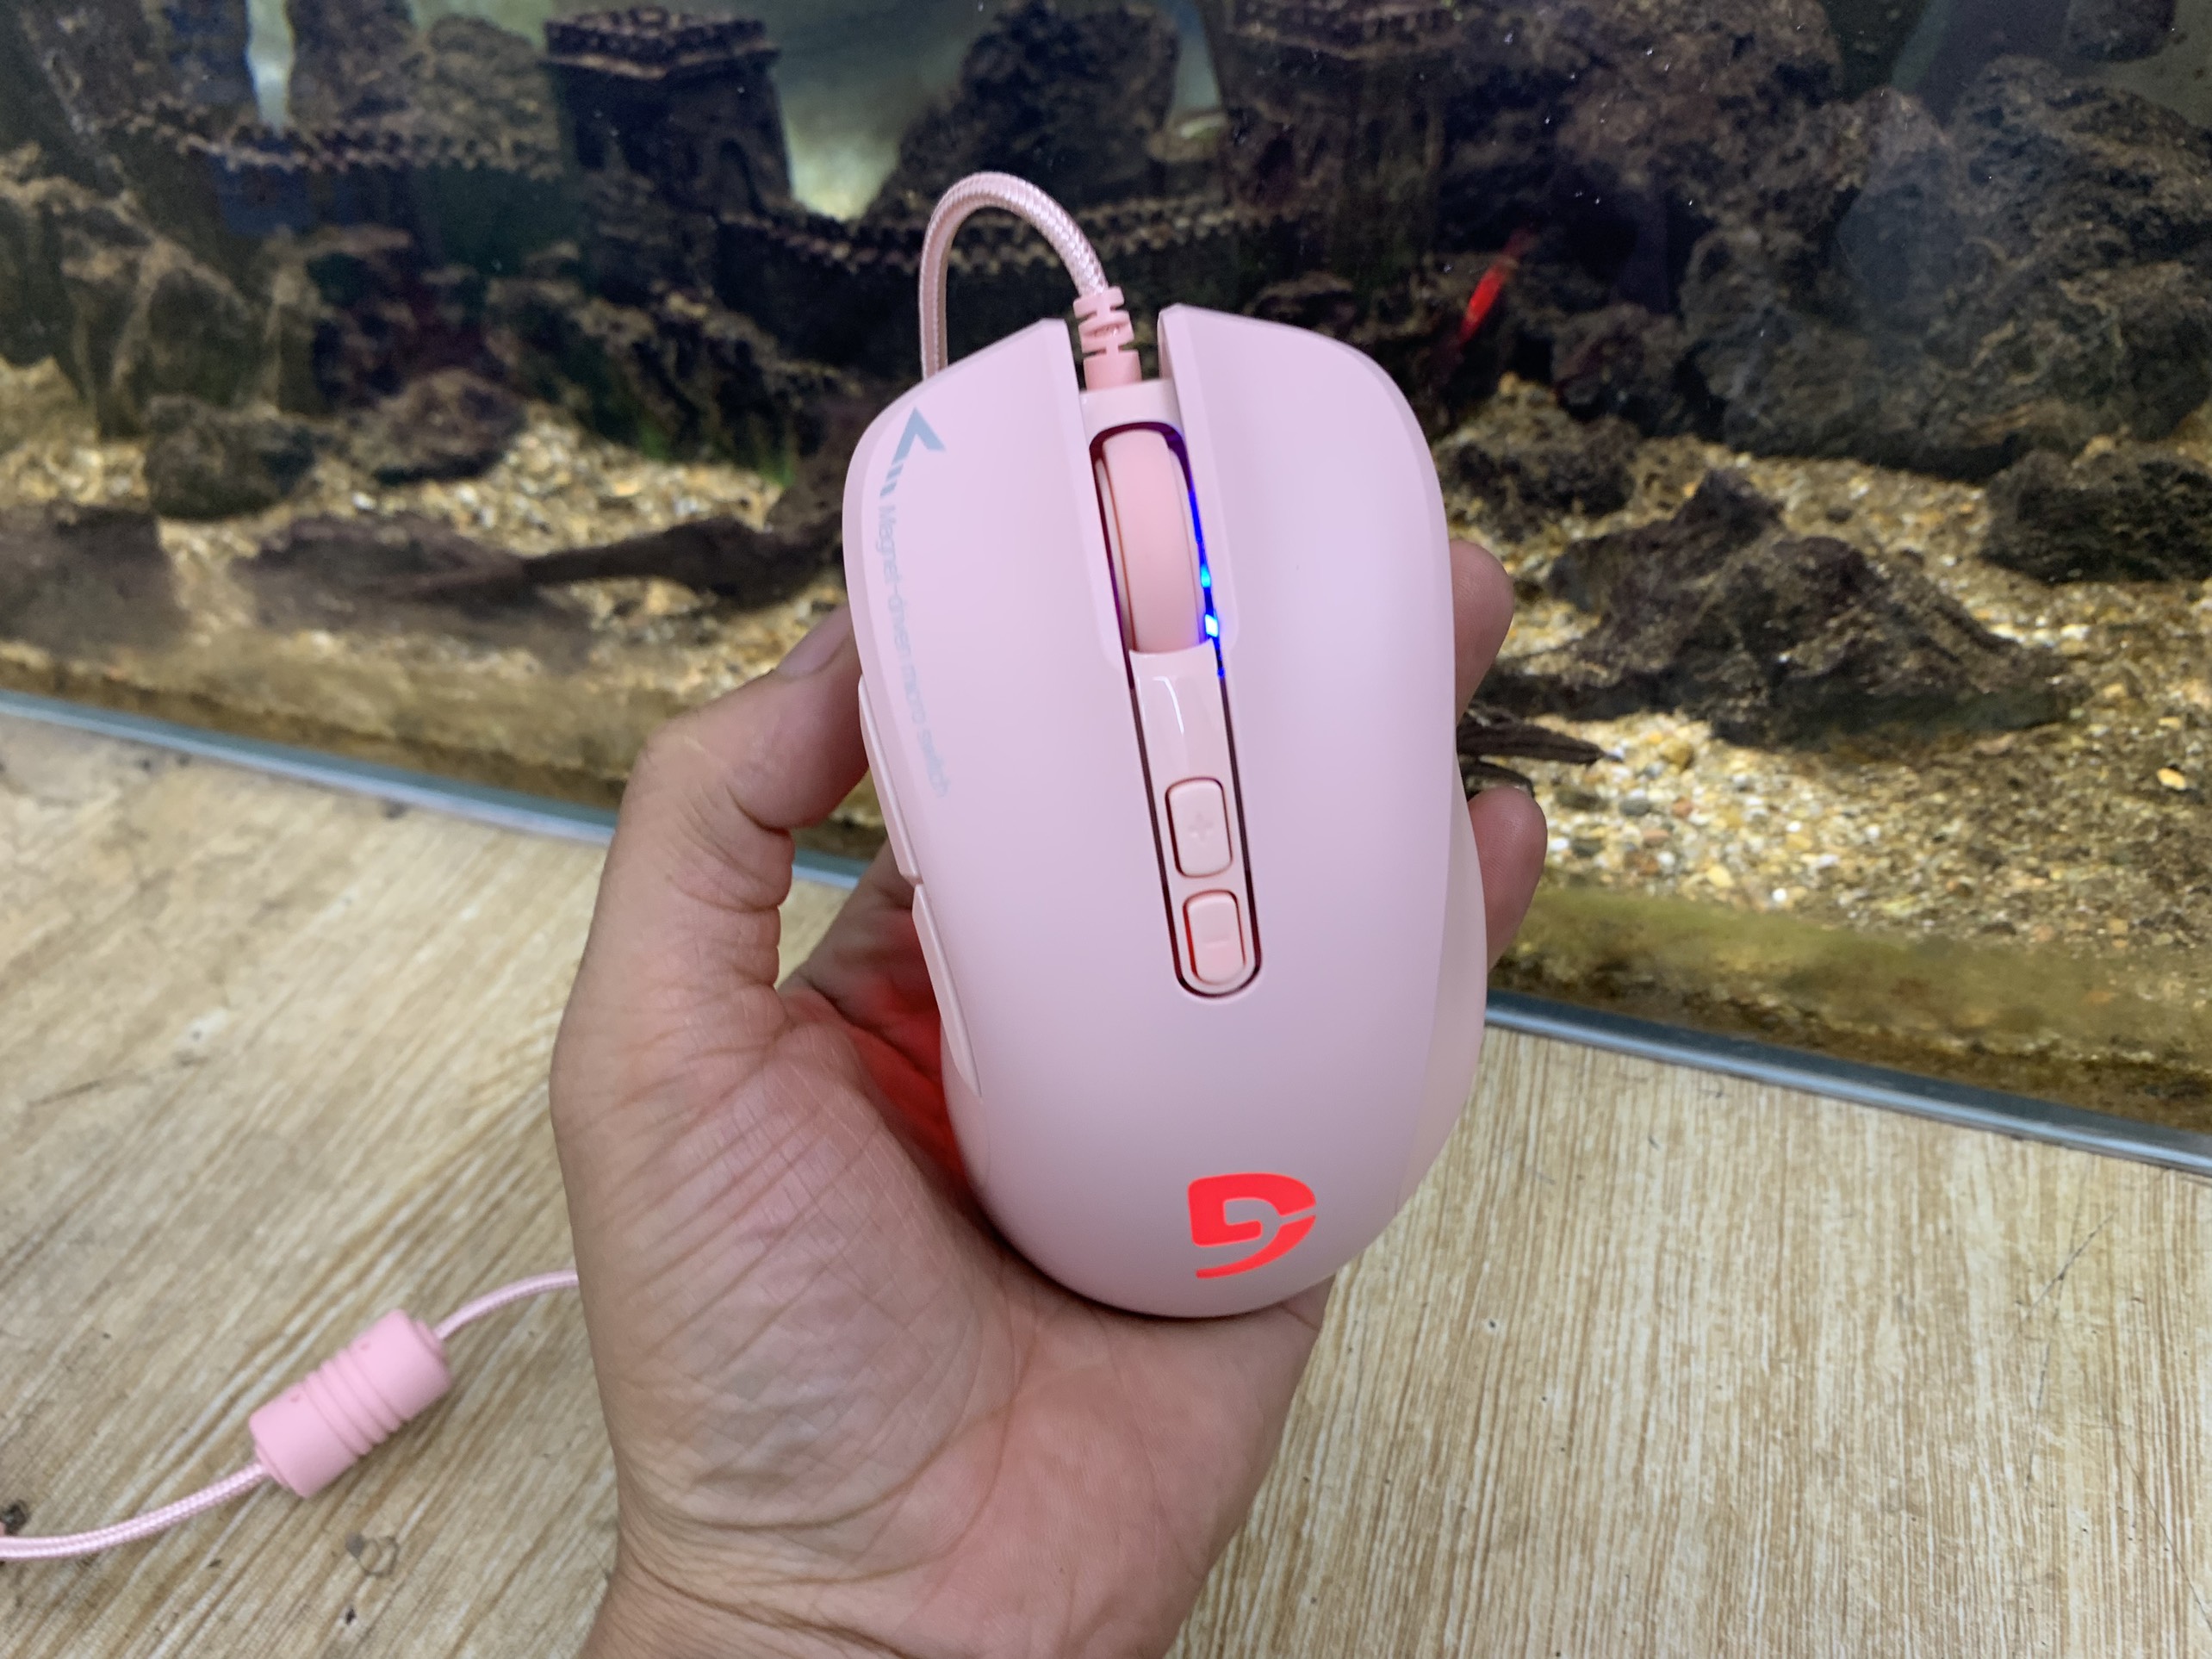 Chuột Gaming Có Dây Fuhlen G90 Pink ( Màu Hồng ) - Hàng Chính Hãng